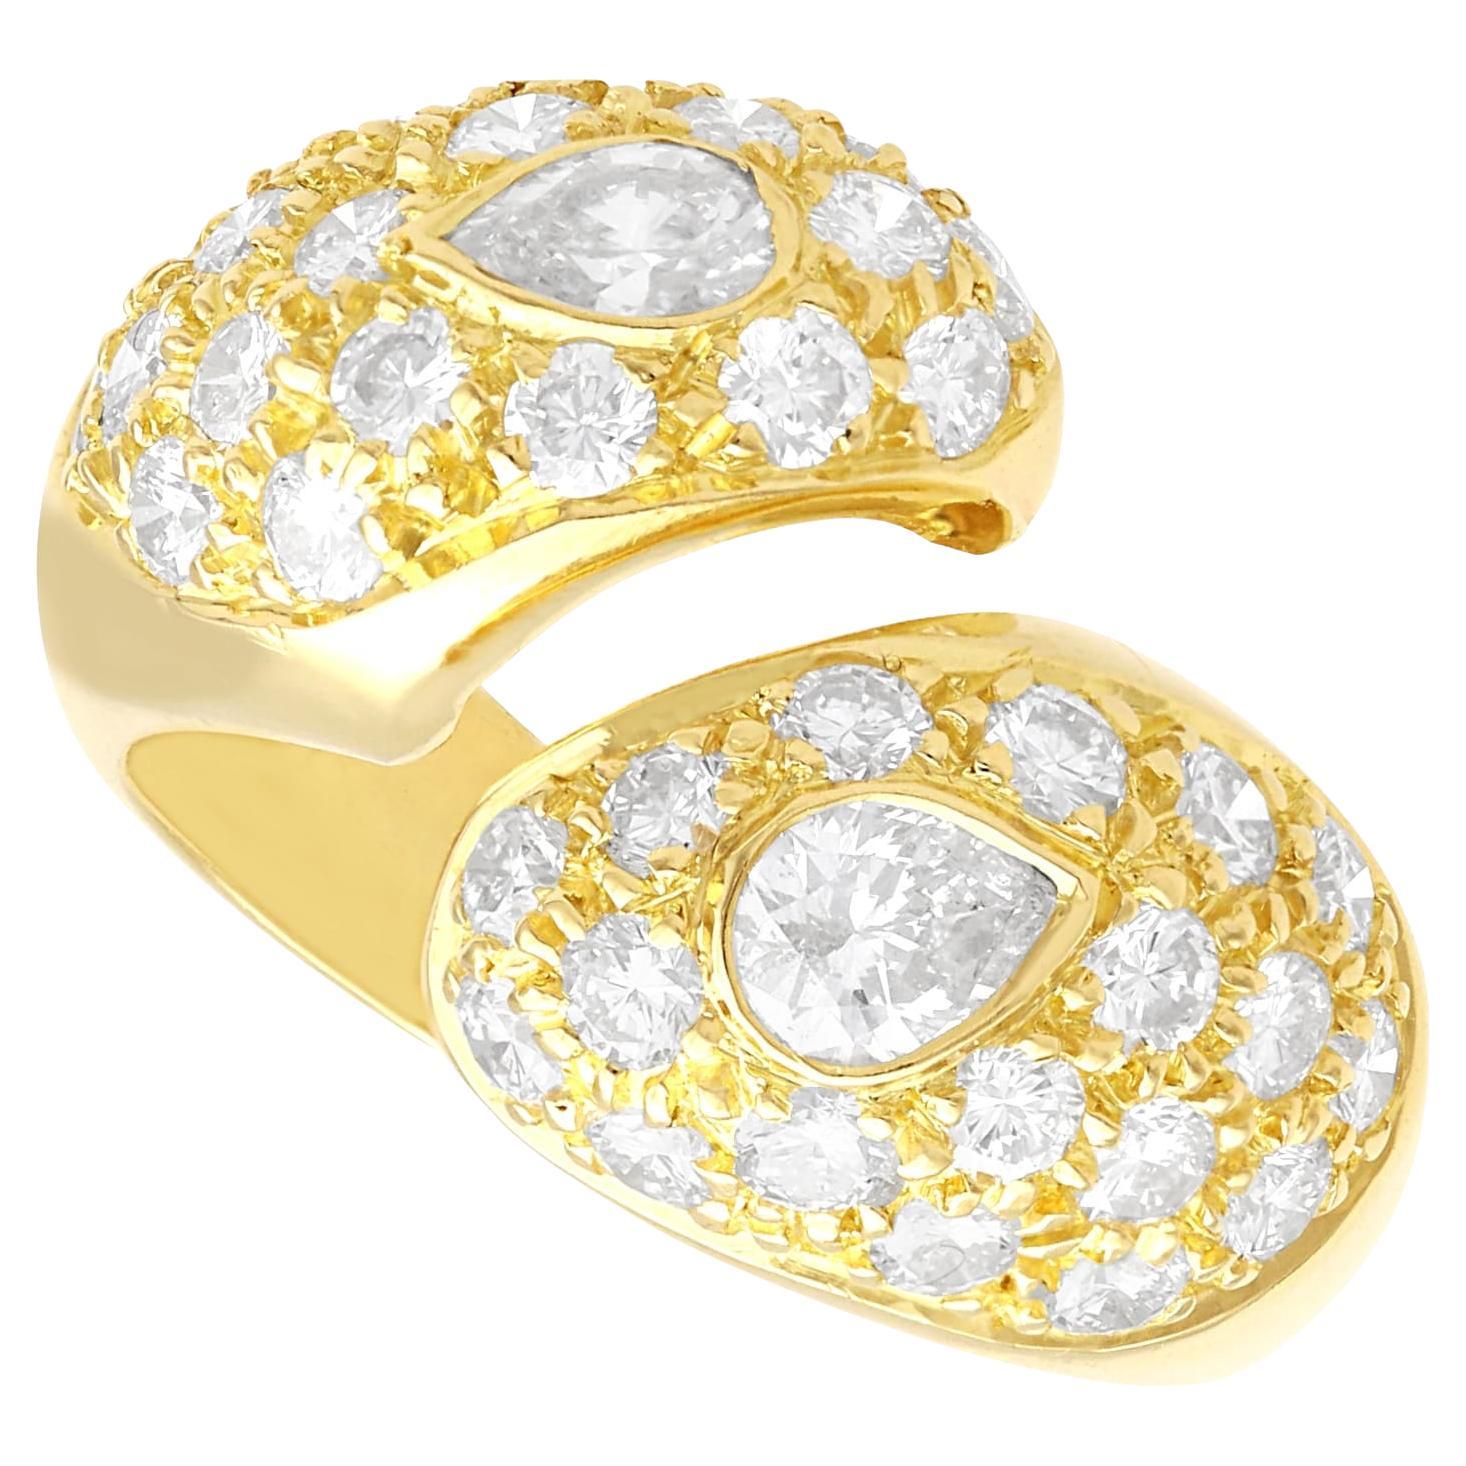 Vintage 1.78 Carat Diamond and 18k Yellow Gold Snake Ring